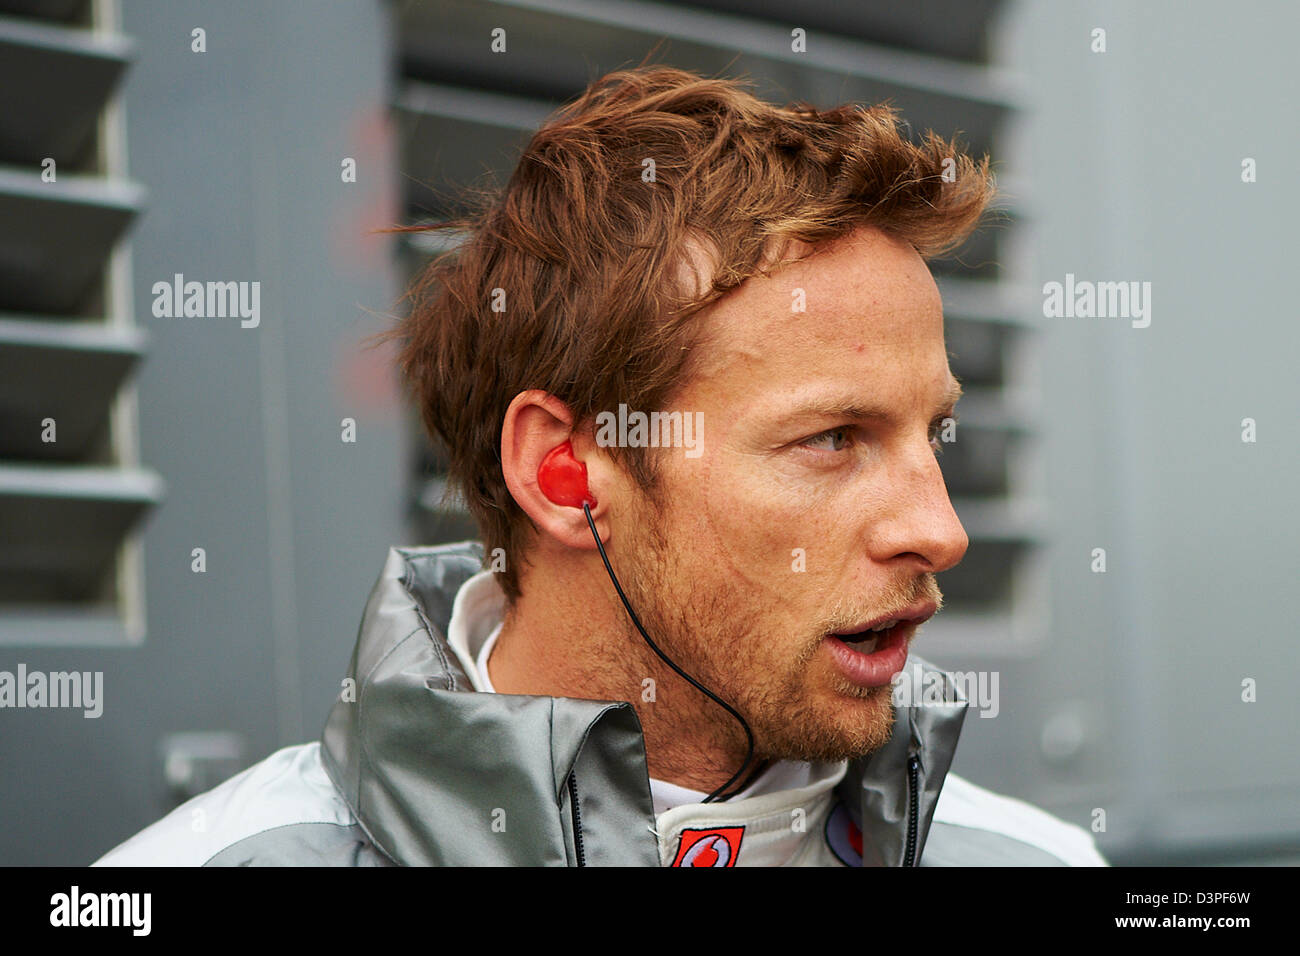 Barcelona, Spanien. 22. Februar 2013.   Jenson Button (McLaren) auf der Koppel, während Formel1 Wintertest am Circuit de Catalunya. Bildnachweis: Aktion Plus Sportbilder / Alamy Live News Stockfoto